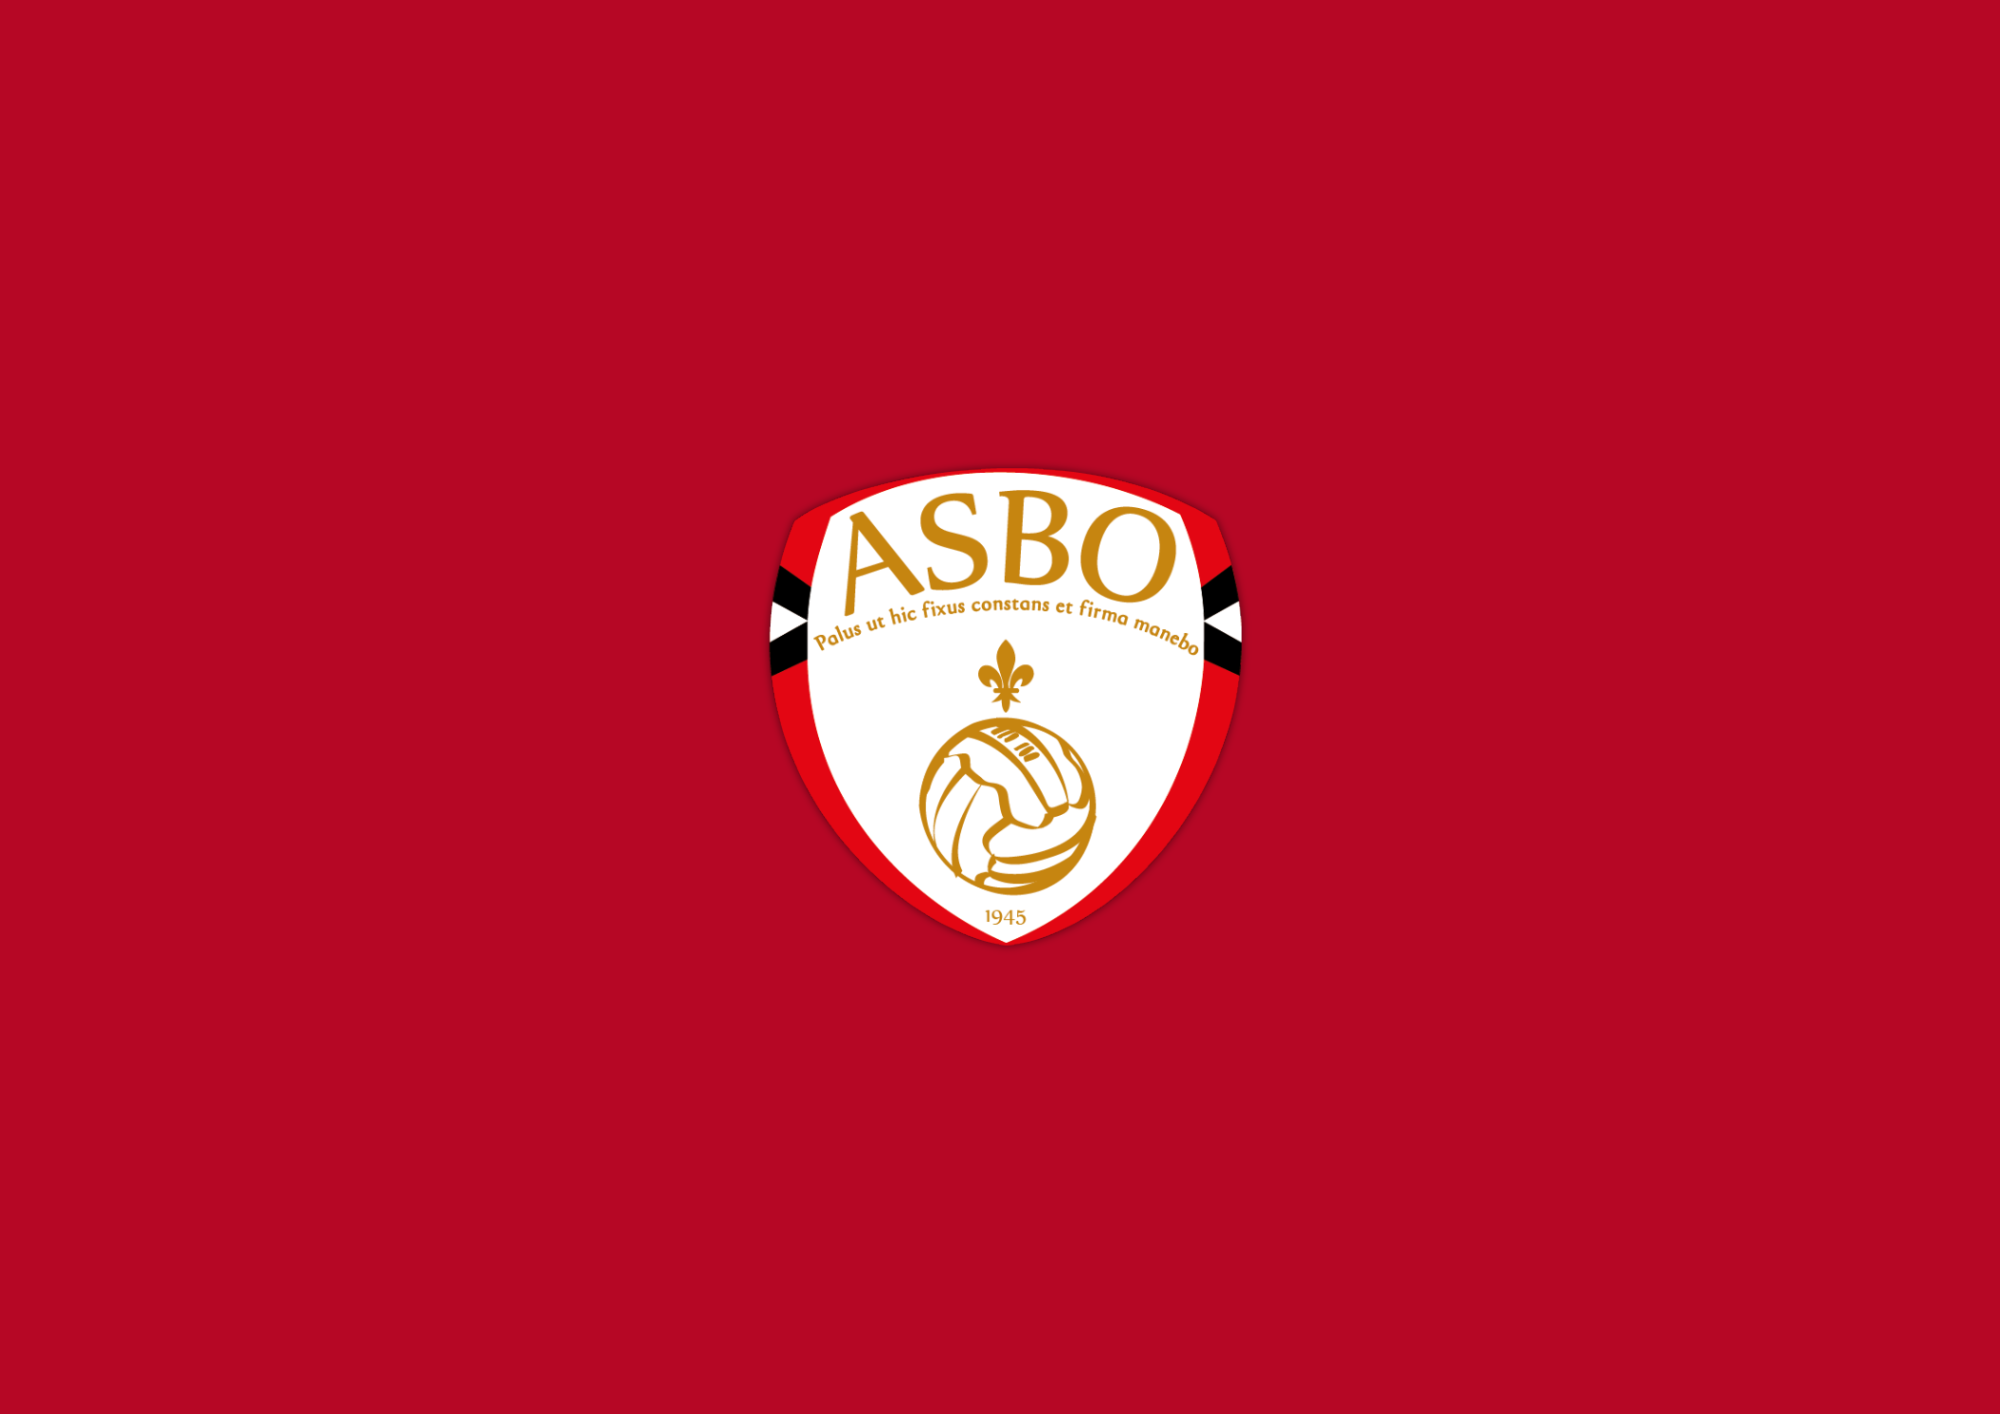 #ASBO Infos importantes concernant les AG extraordinaires